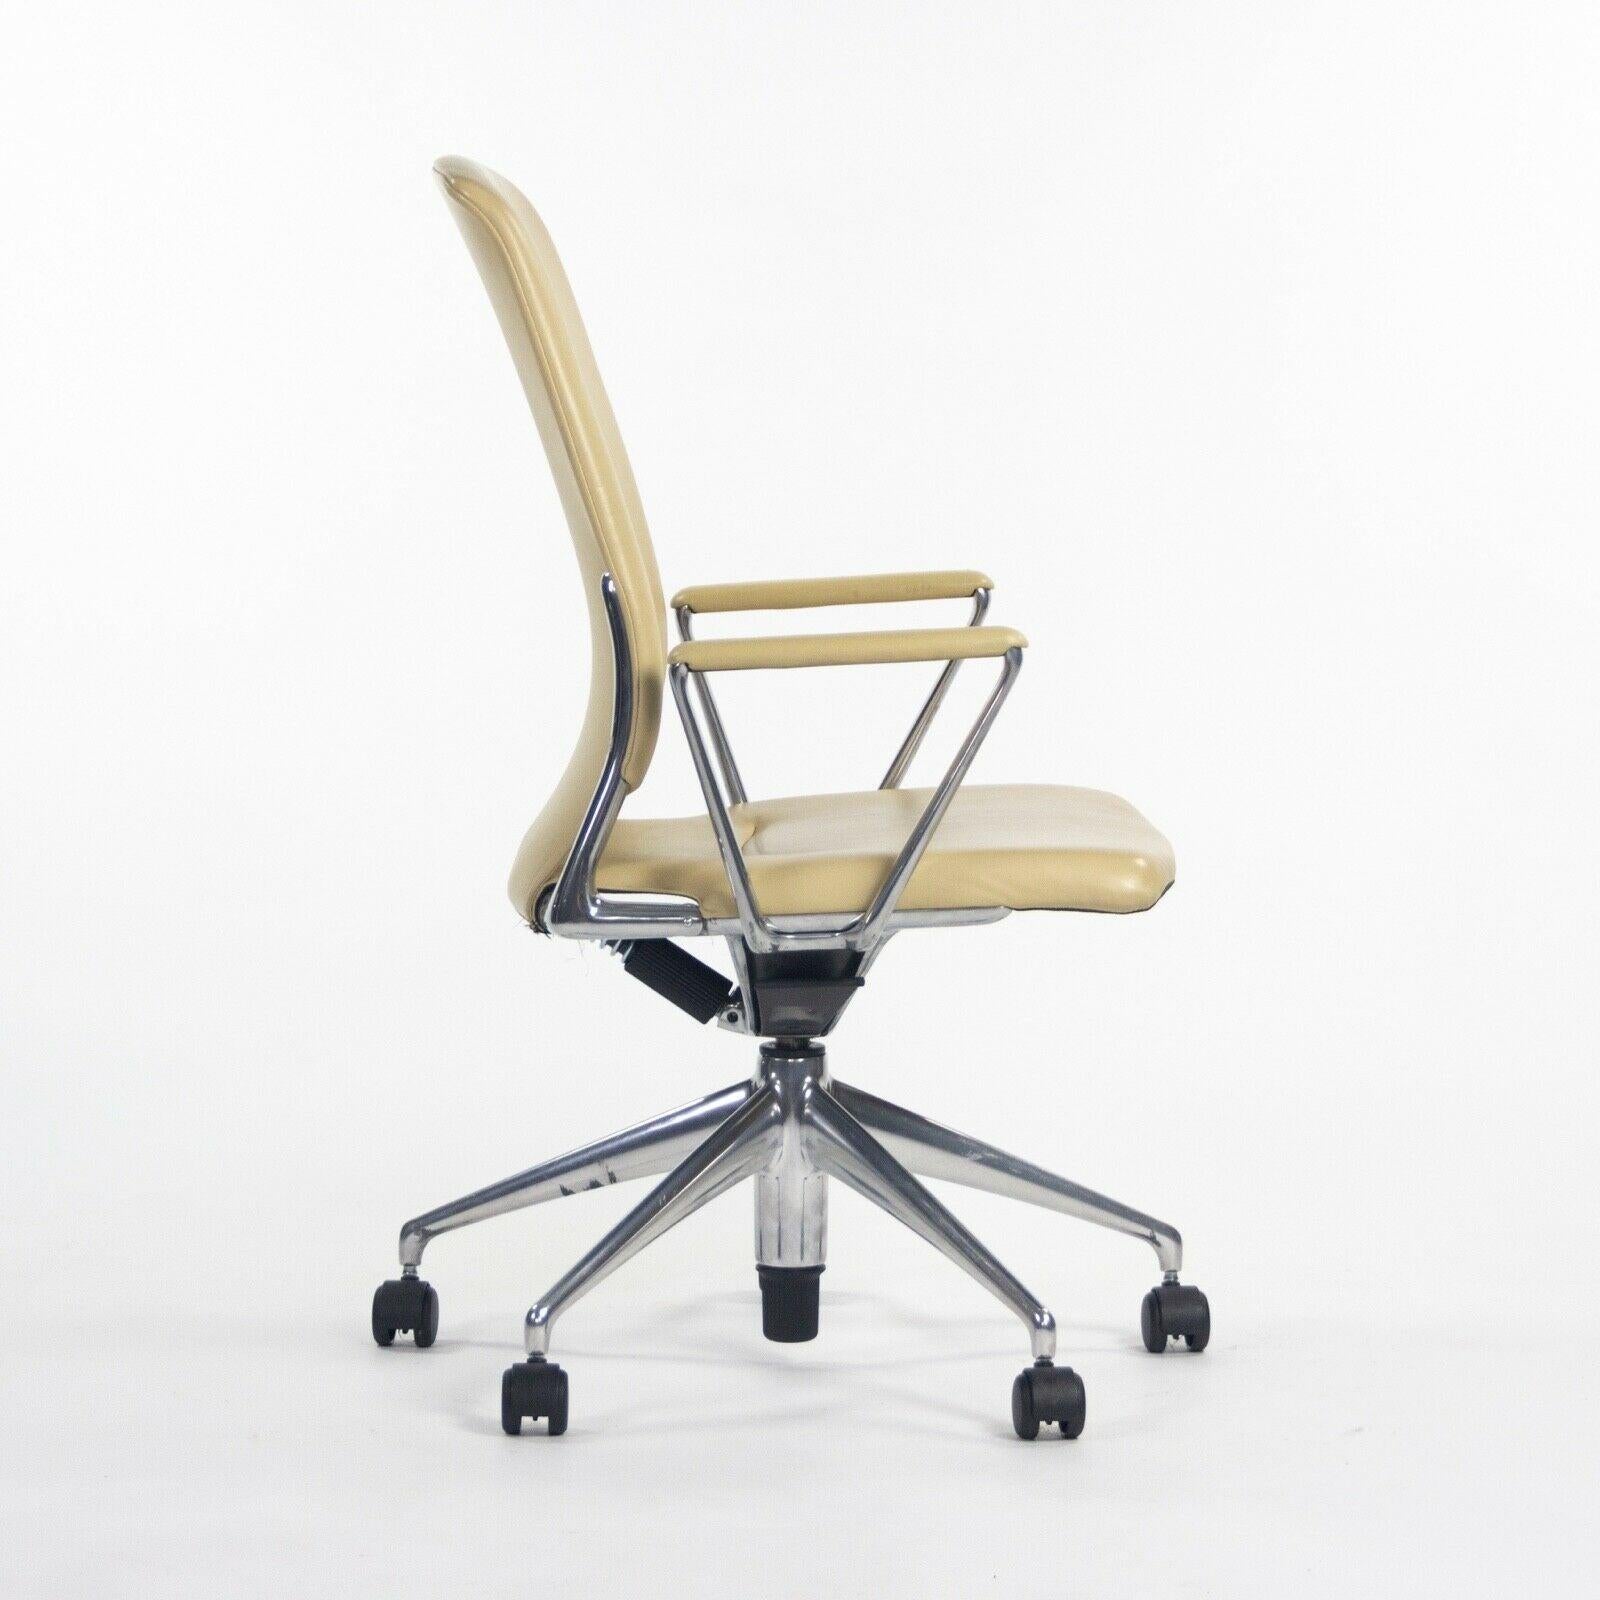 Nous proposons à la vente plusieurs chaises de bureau en cuir fauve Vitra Meda (vendues séparément), conçues par Alberto Meda. Les chaises sont dotées d'un cuir propre et en très bon état, avec seulement quelques légères traces d'usure. Le métal est